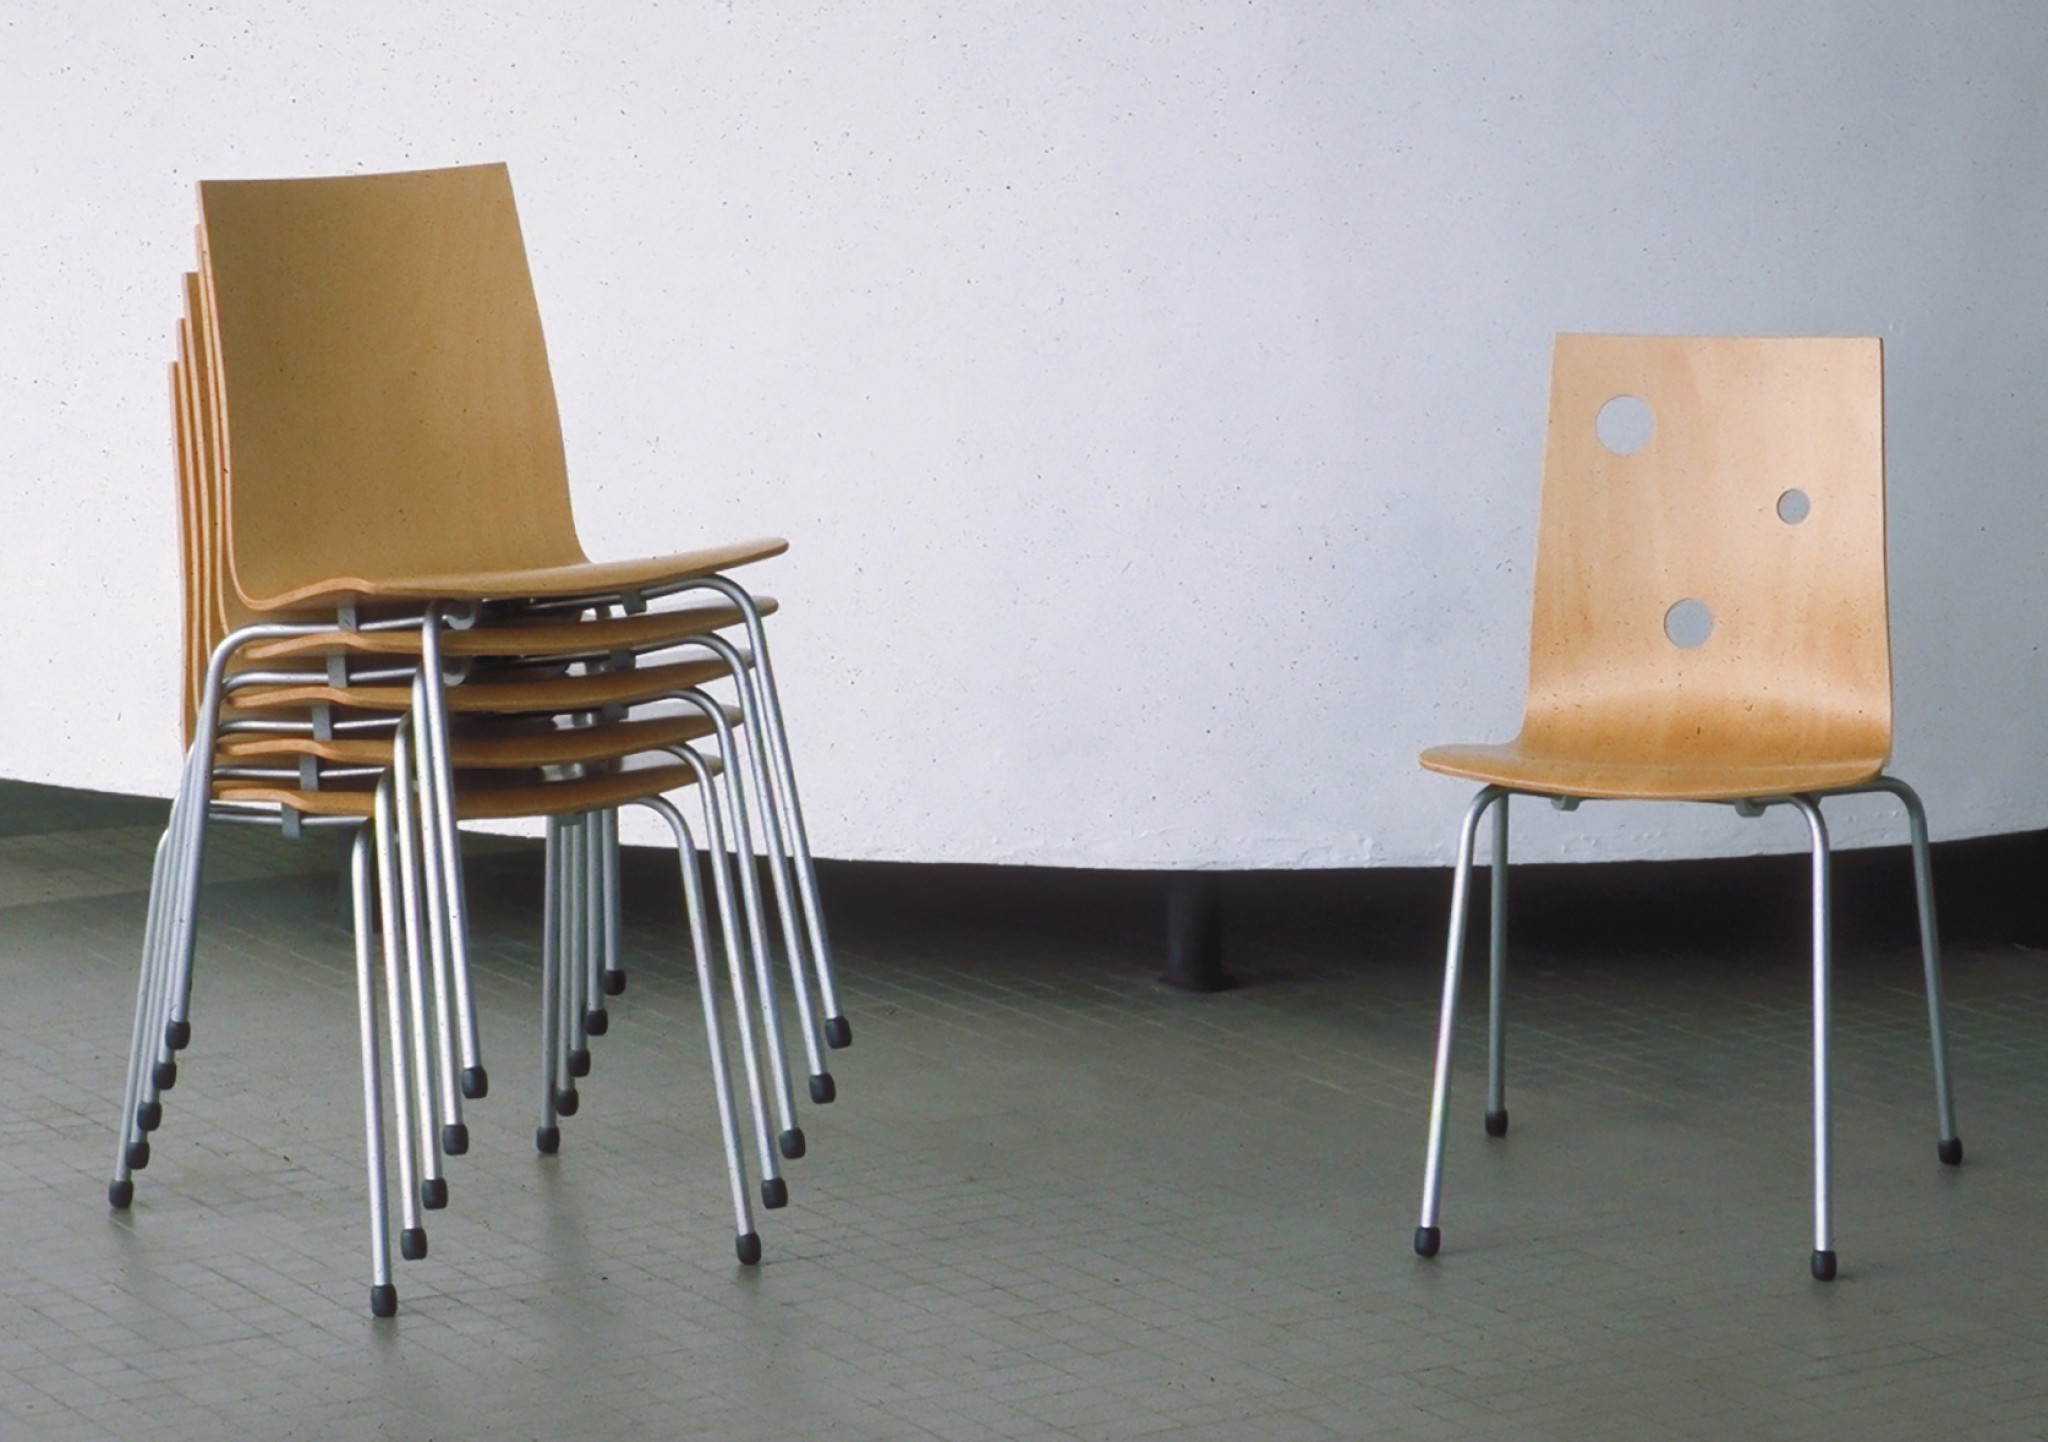 De Ontwerpwerkplaats, Gijs Niemeijer, Floor van Ditzhuyzen, Fem-stoel, fem-stoel, stoelontwerp, ontwerp stoel, van der plas meubel & project, 